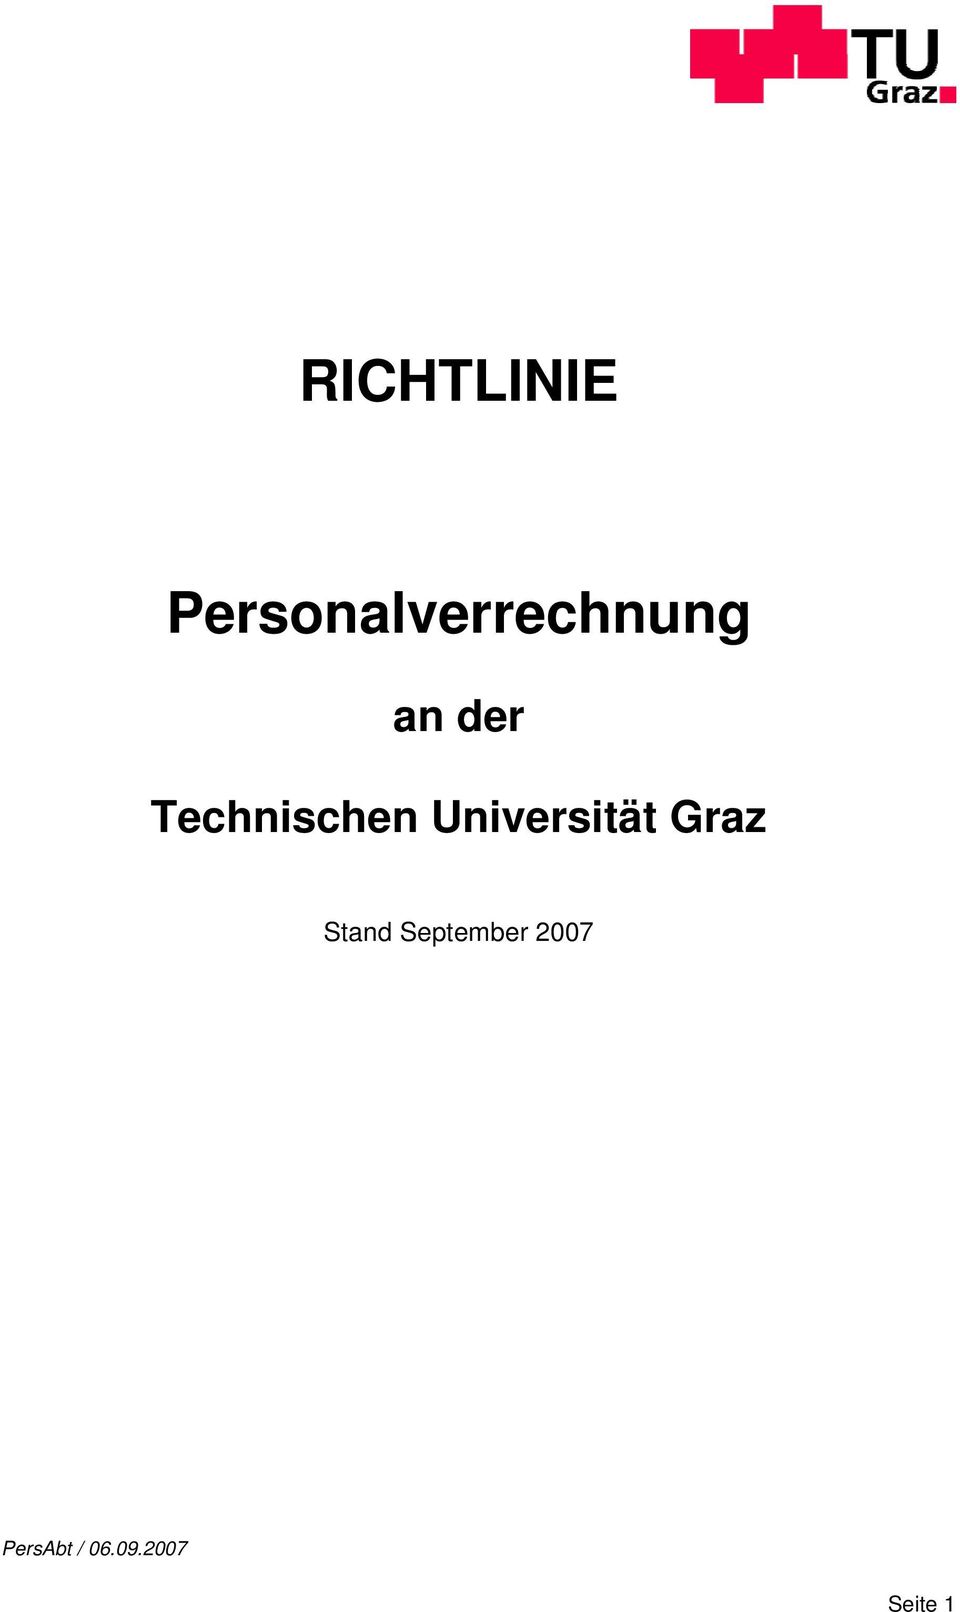 Technischen Universität Graz